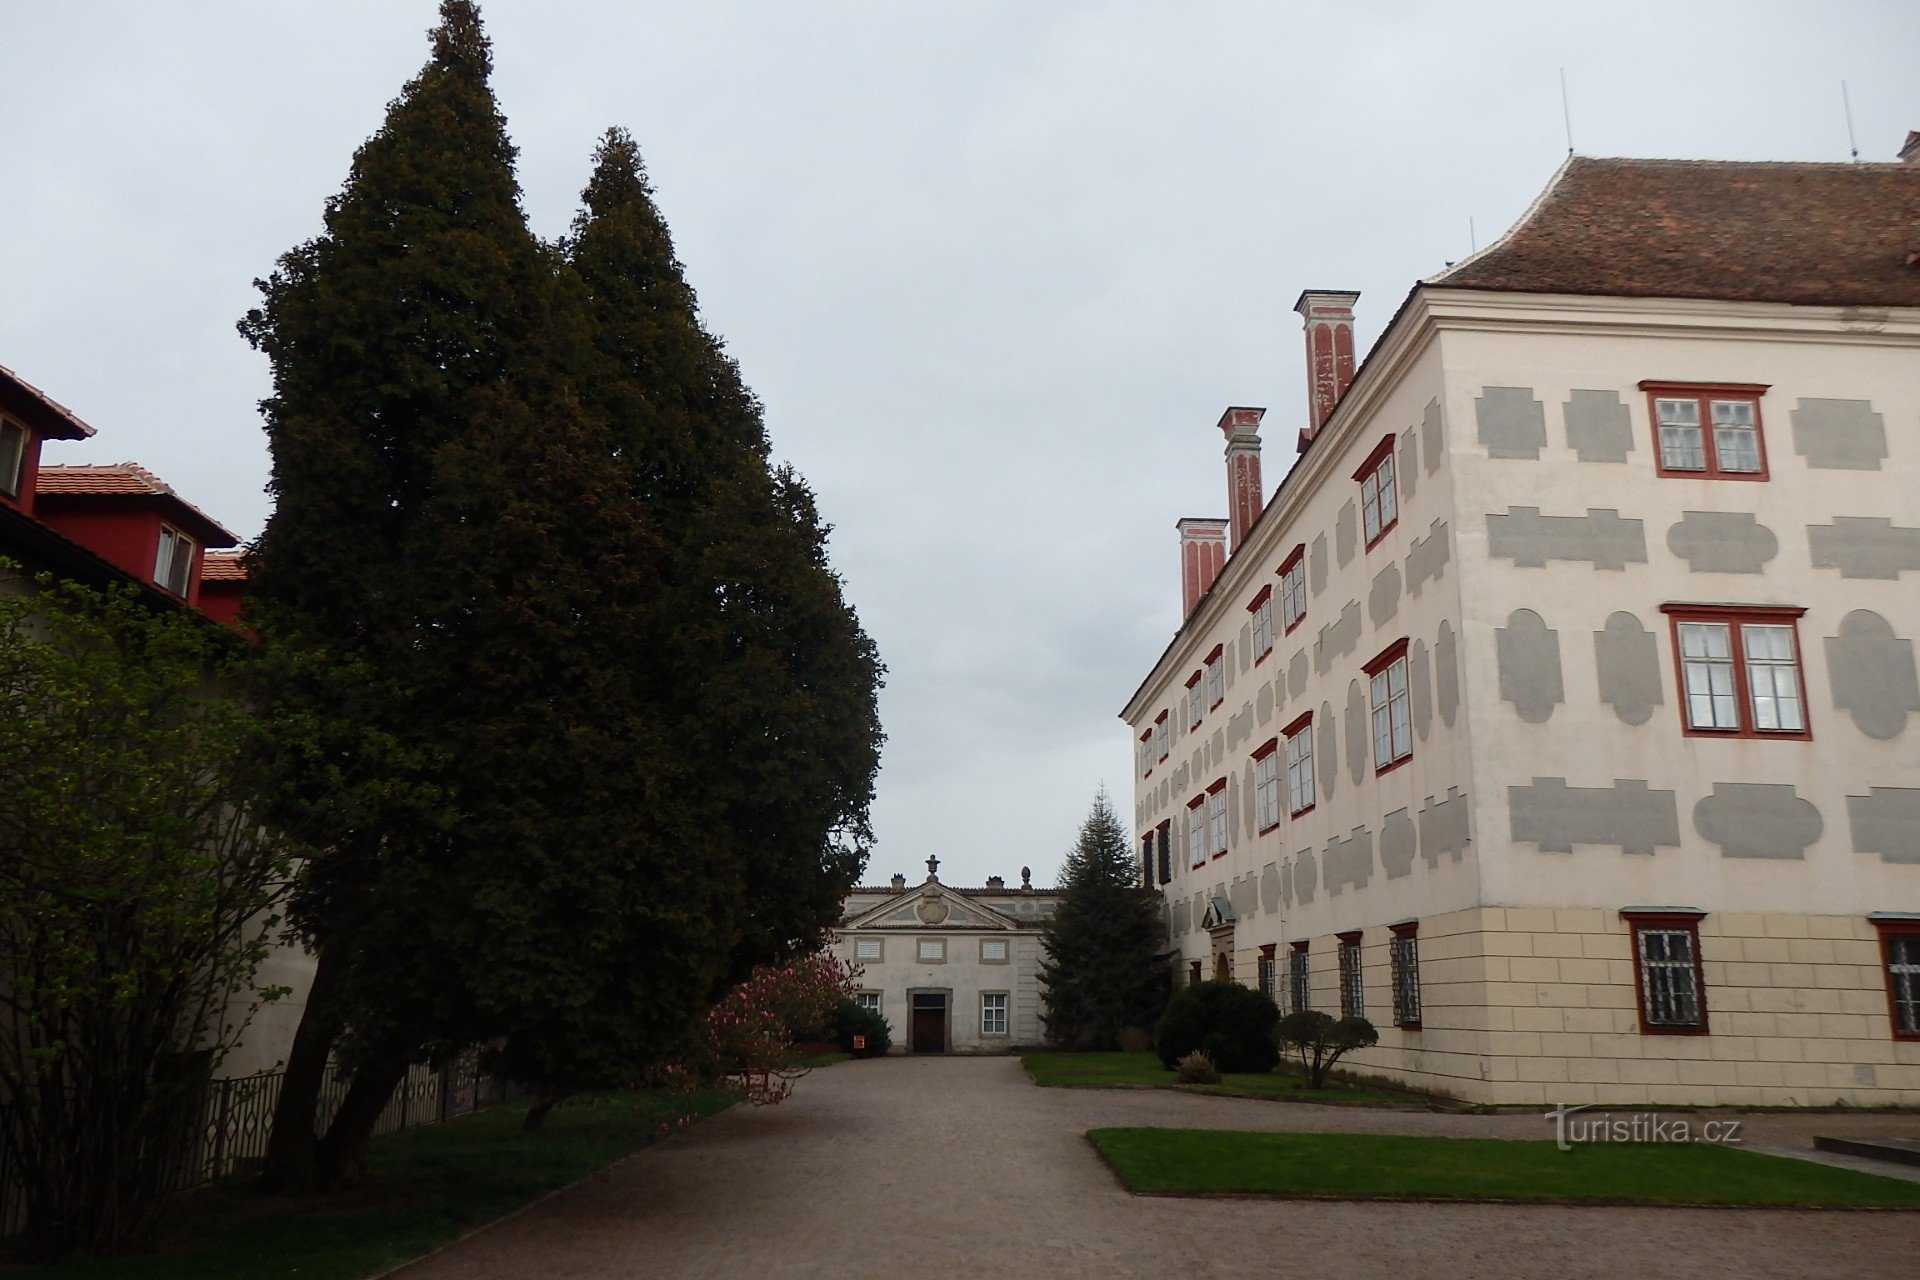 Château Opočno